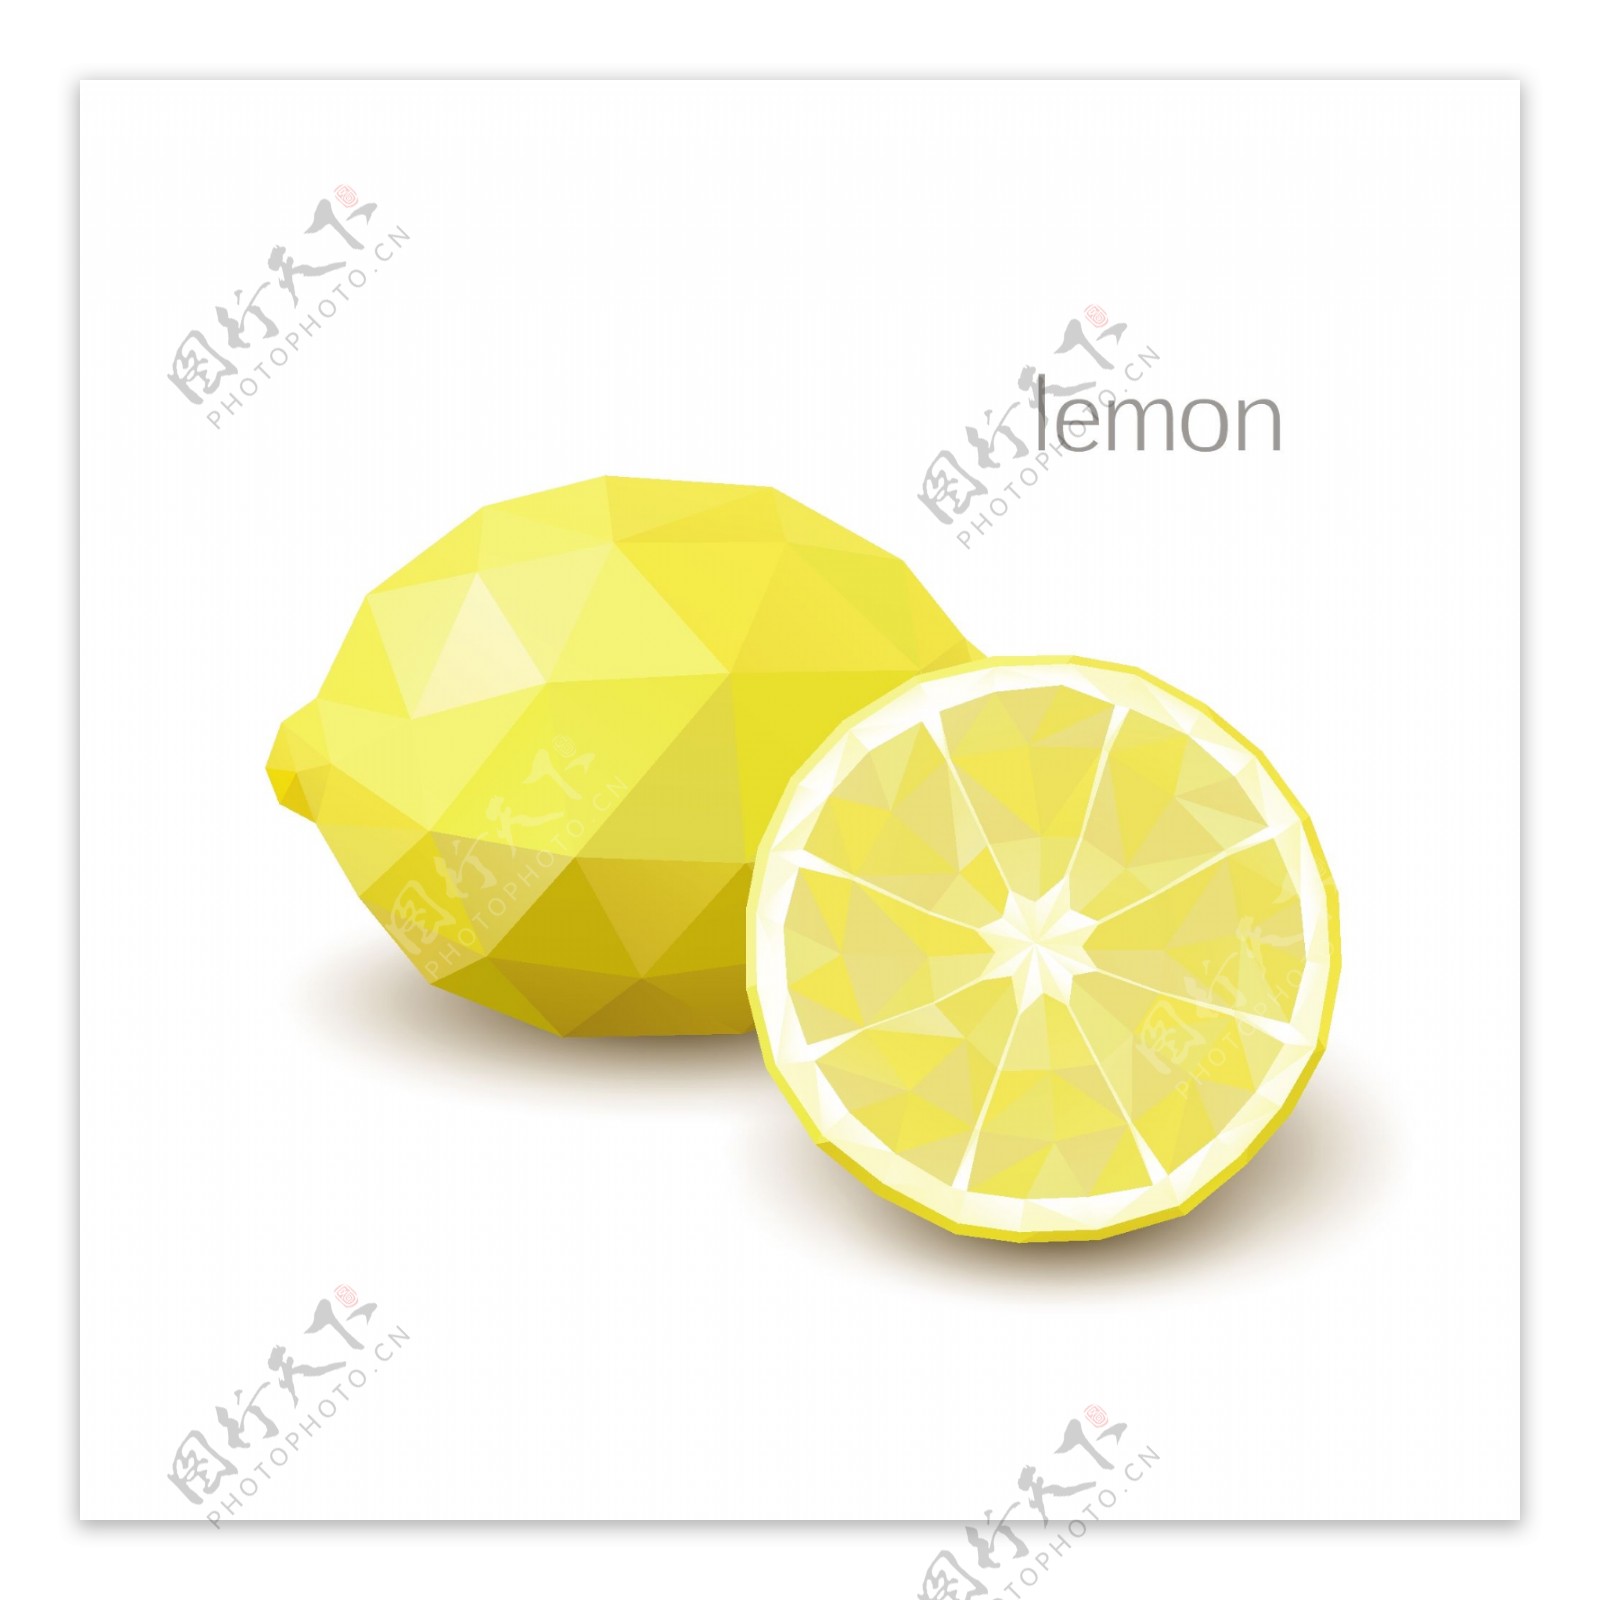 三角形柠檬